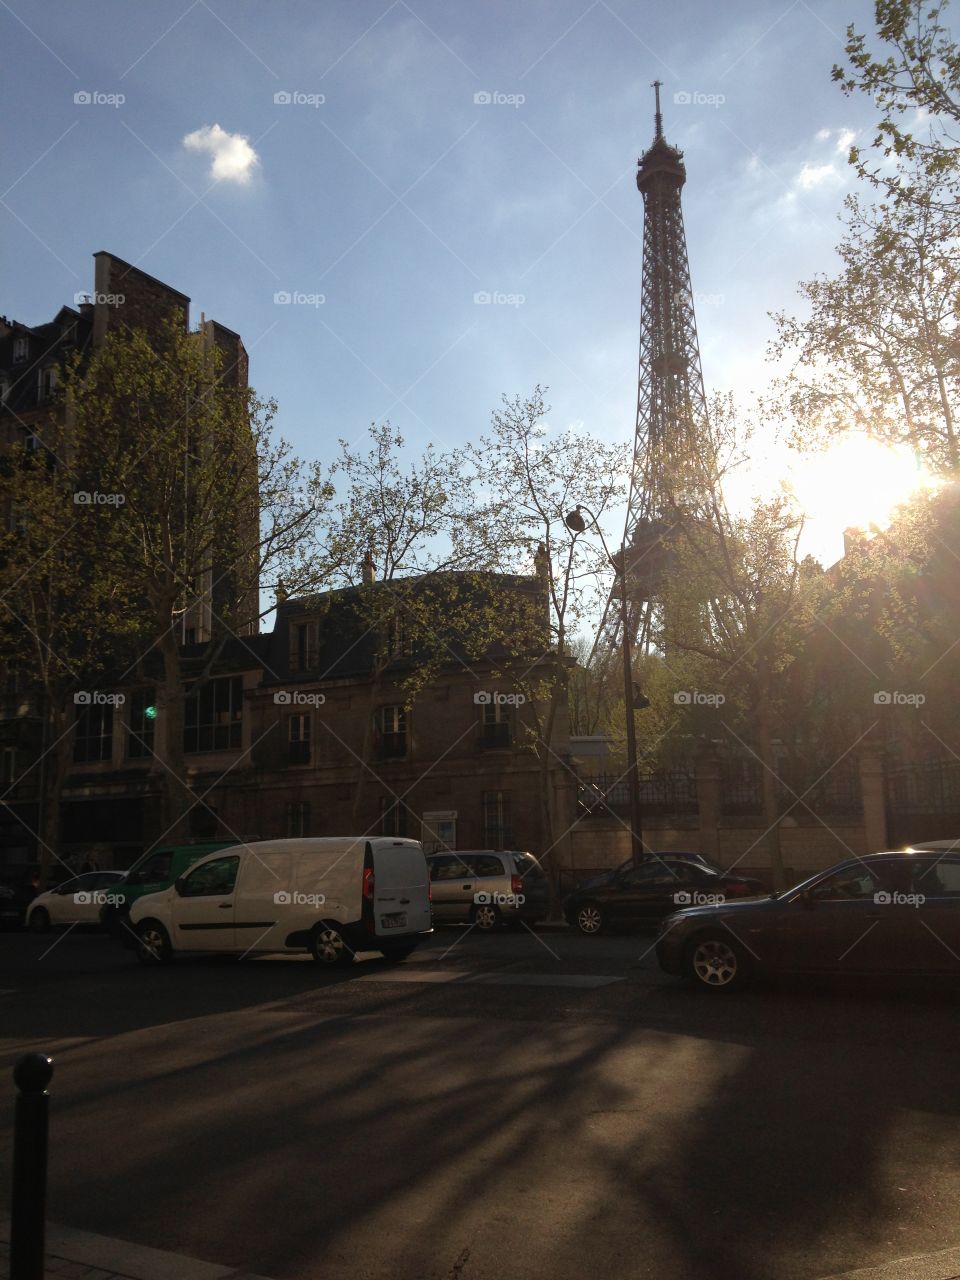  A walk in Paris